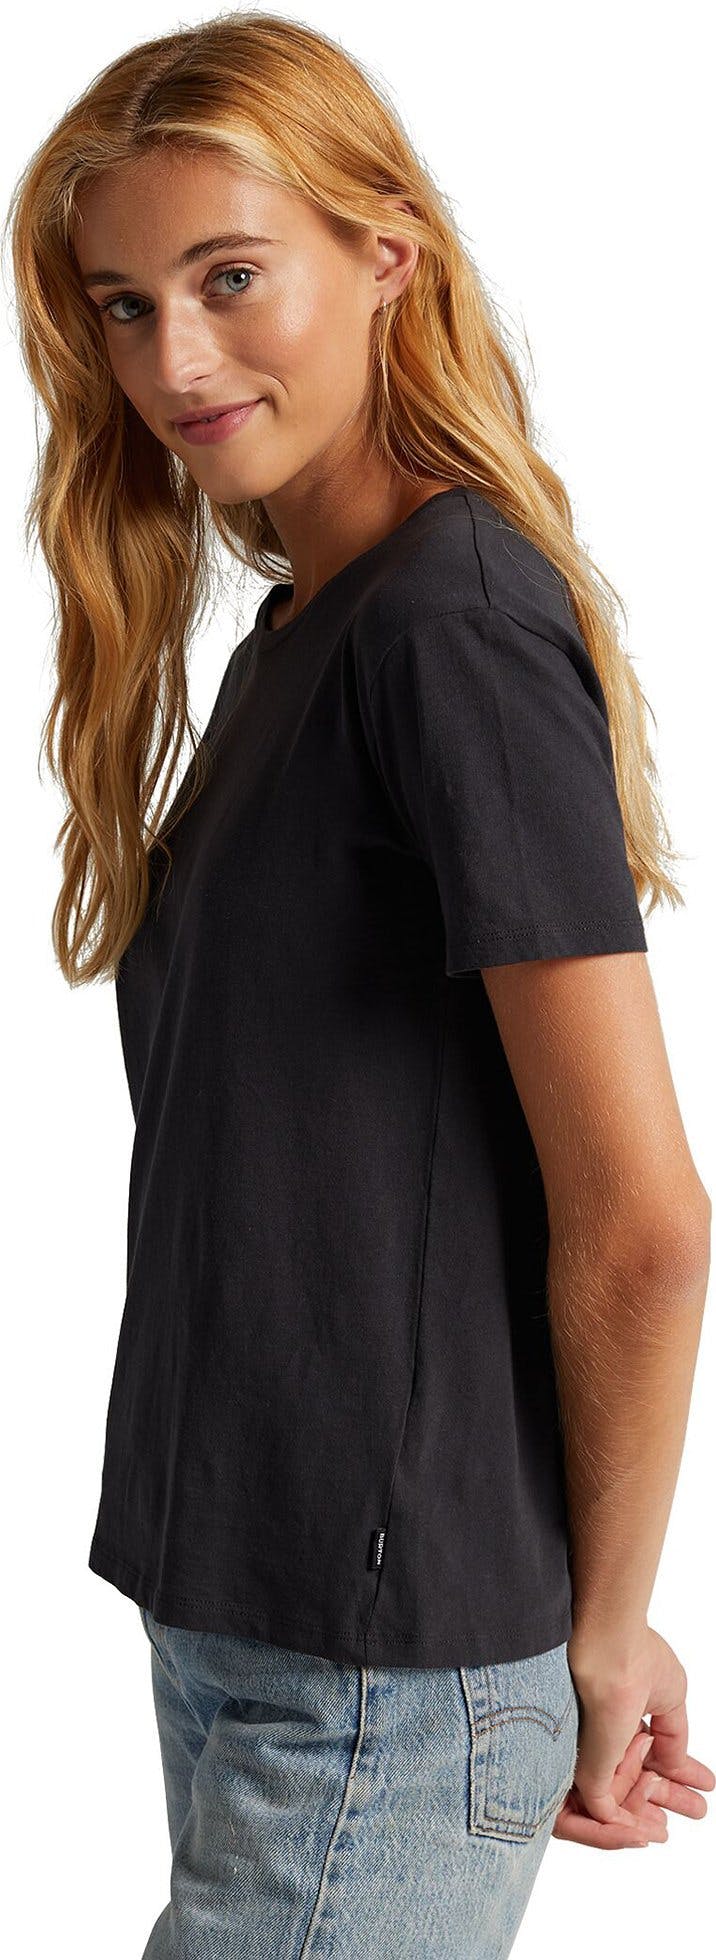 Numéro de l'image de la galerie de produits 3 pour le produit T-shirt manches courtes Classic - Femme